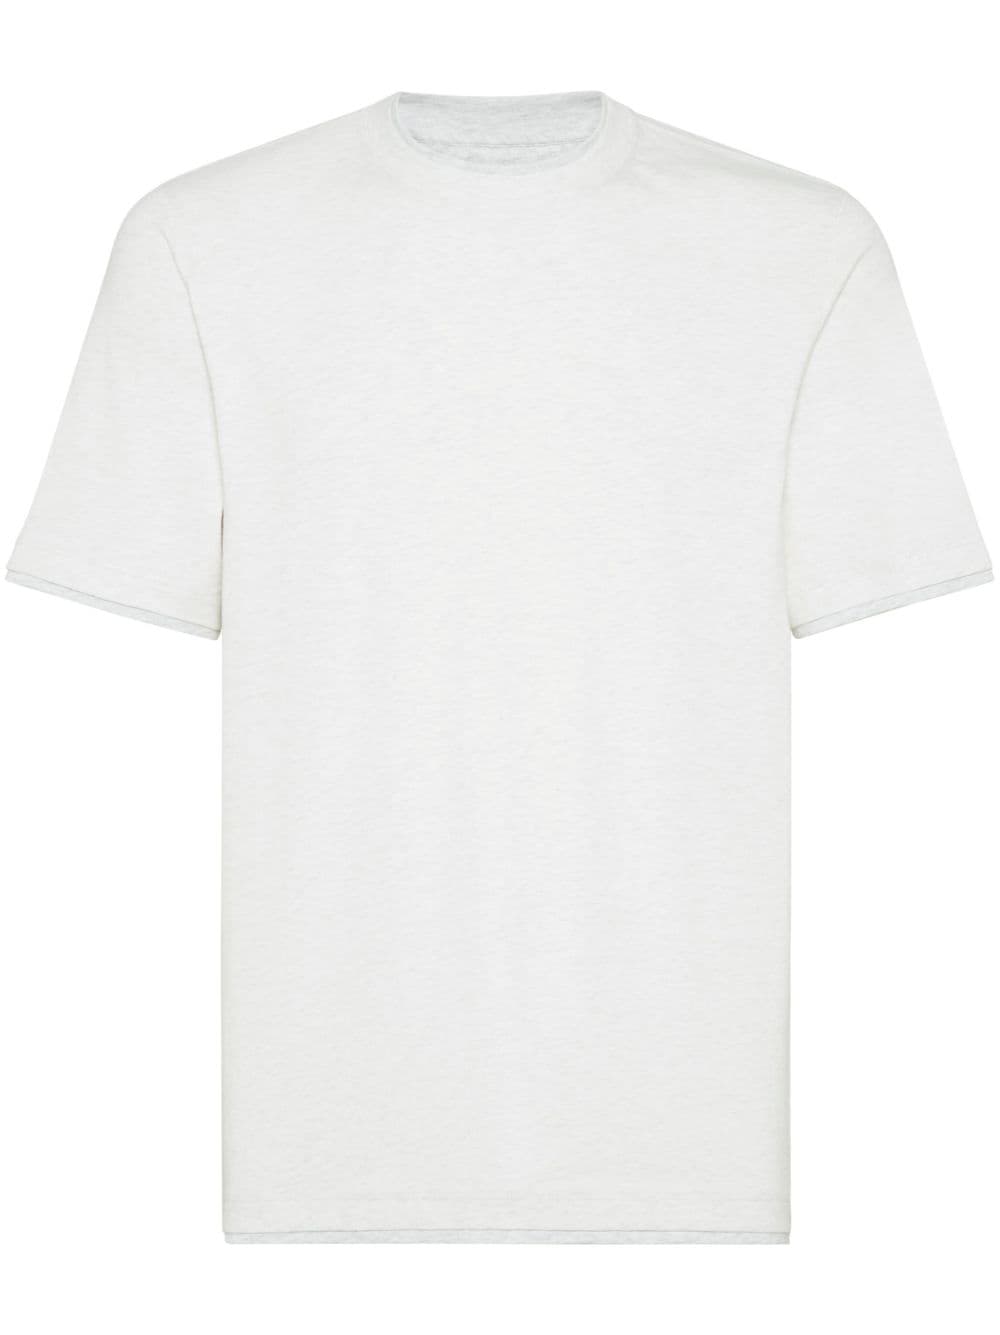 T-shirt gris perle avec logo